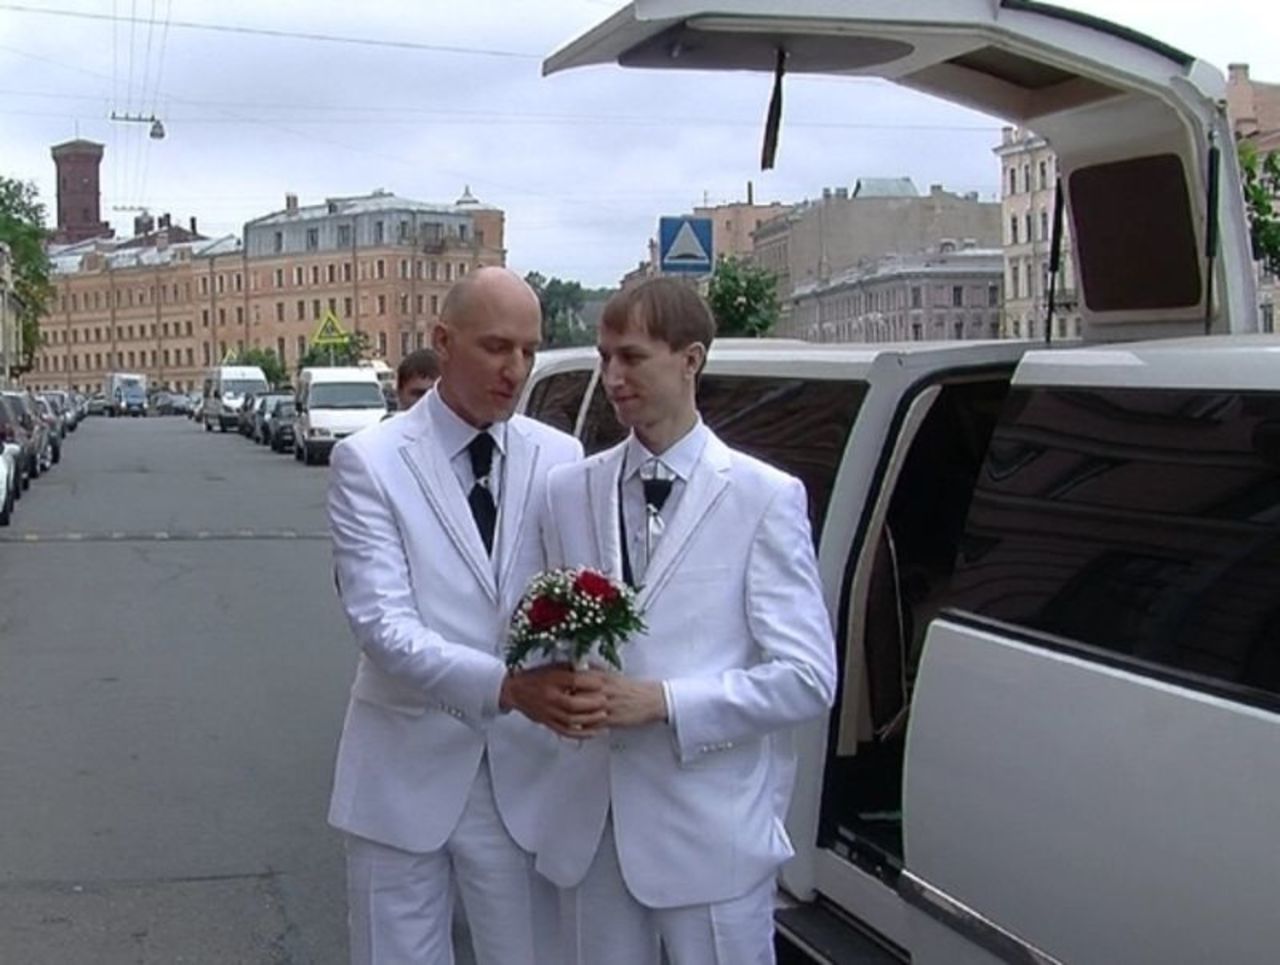 ЛГБТ-активисты подали апелляцию на решение суда по гей-бракам - Росбалт